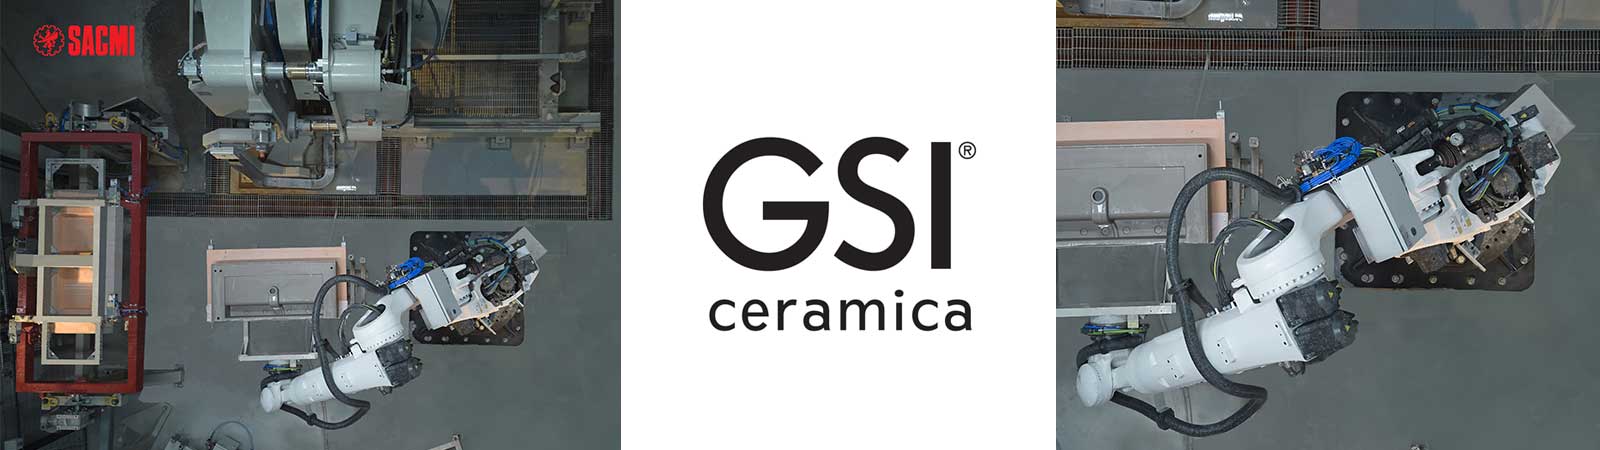 GSI Ceramica porta a cinque le macchine ADM SACMI per la produzione di lavabi e consolle